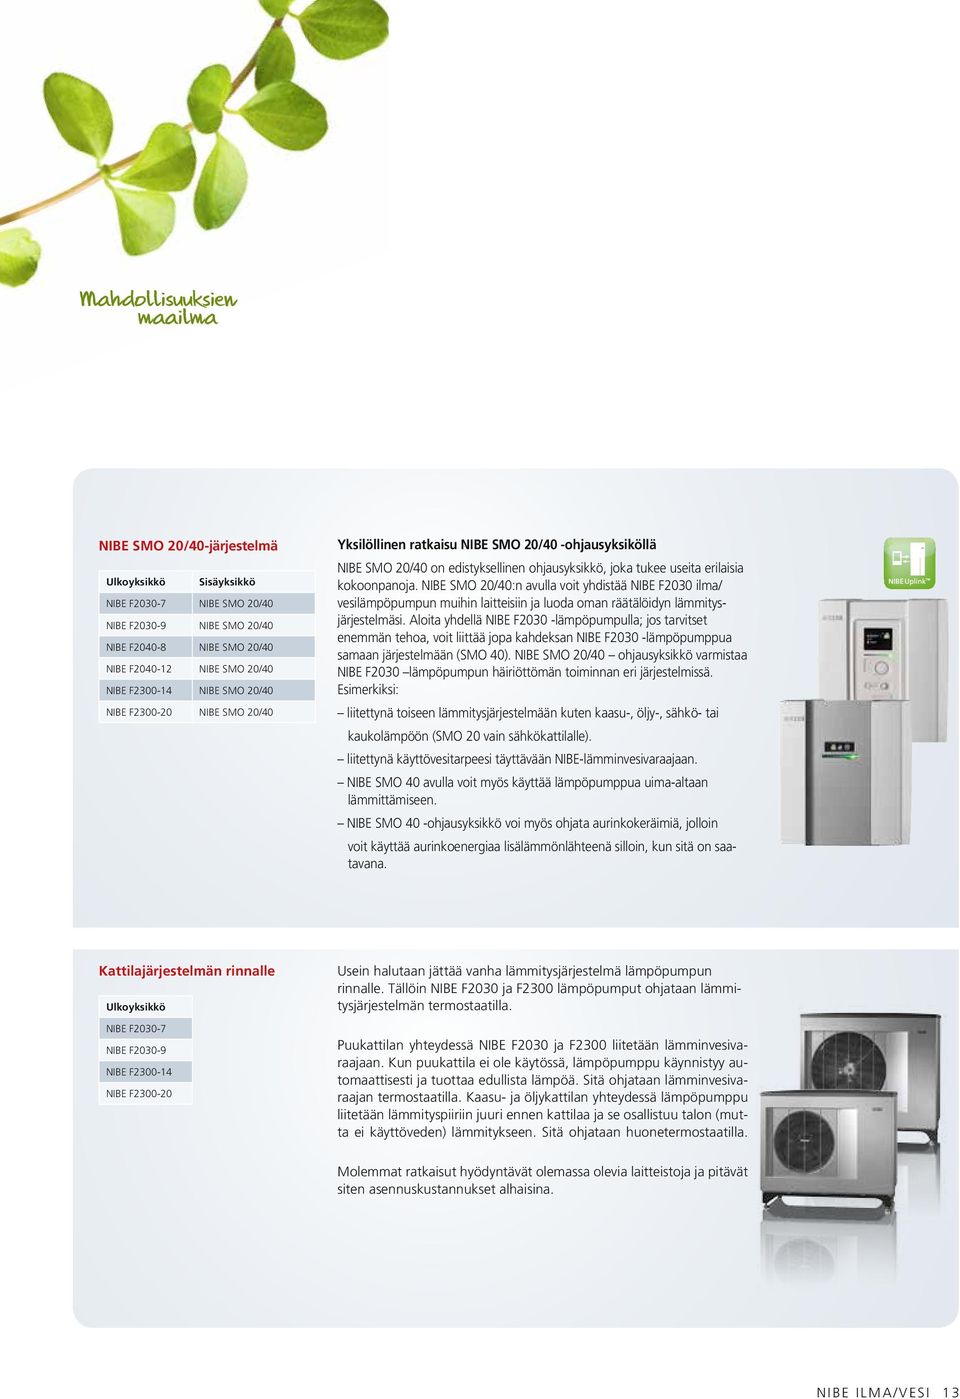 NIBE SMO 20/40:n avulla voit yhdistää NIBE F2030 ilma/ vesilämpöpumpun muihin laitteisiin ja luoda oman räätälöidyn lämmitysjärjestelmäsi.